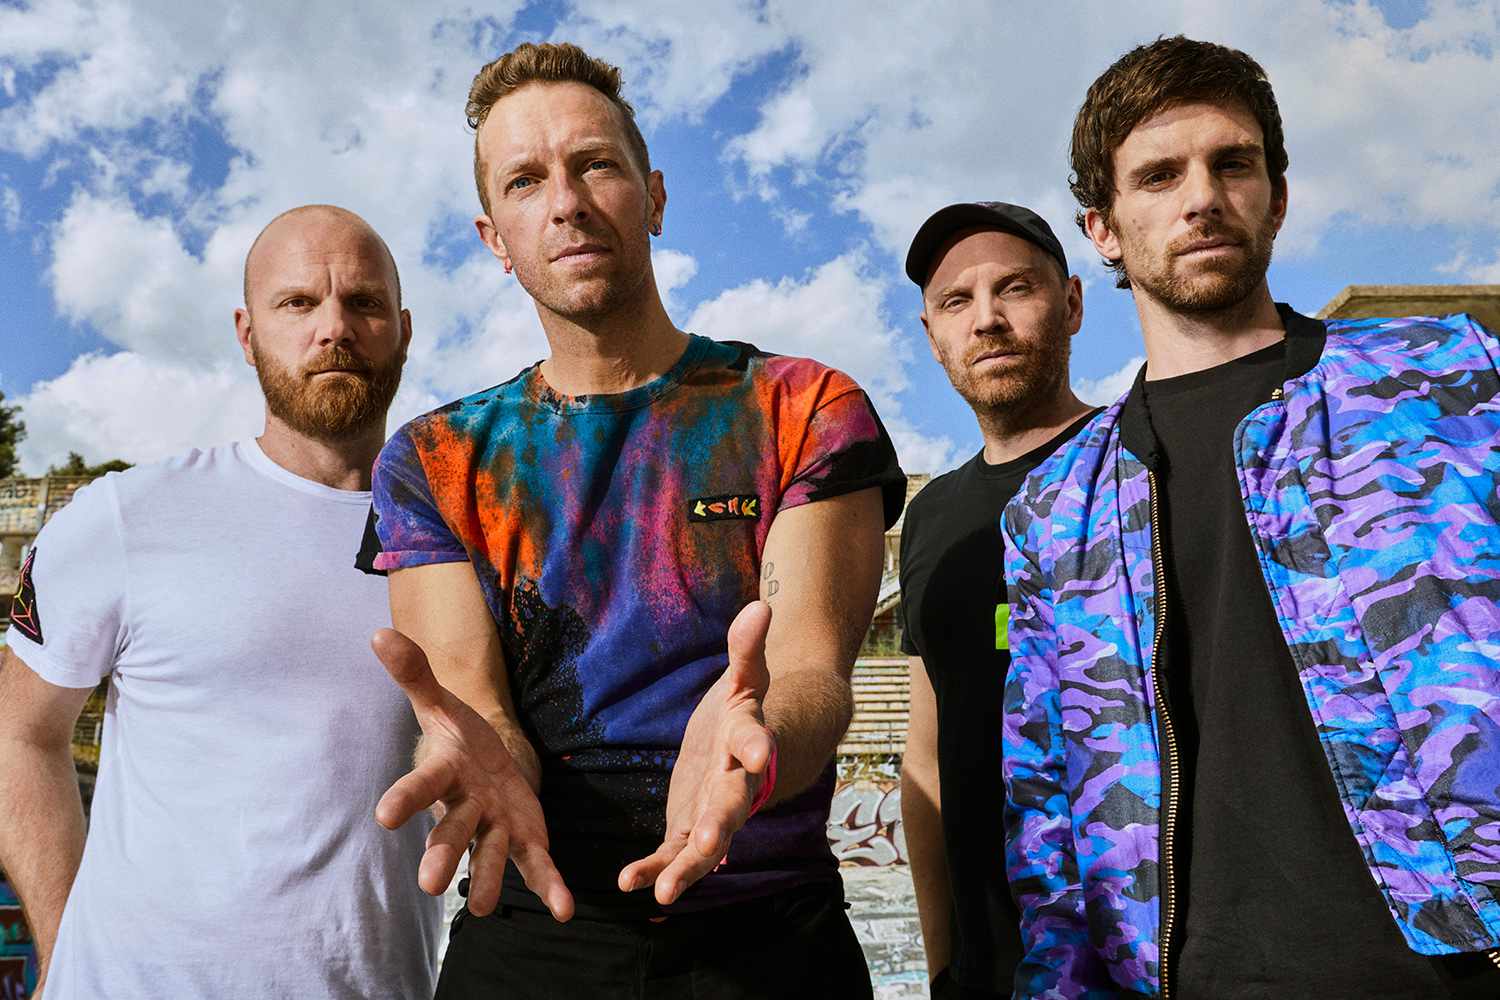 Dikenal Jago di Atas Panggung, Berikut 4 Lagu Plus Live Performance Terbaik Coldplay yang Tak Terlupakan